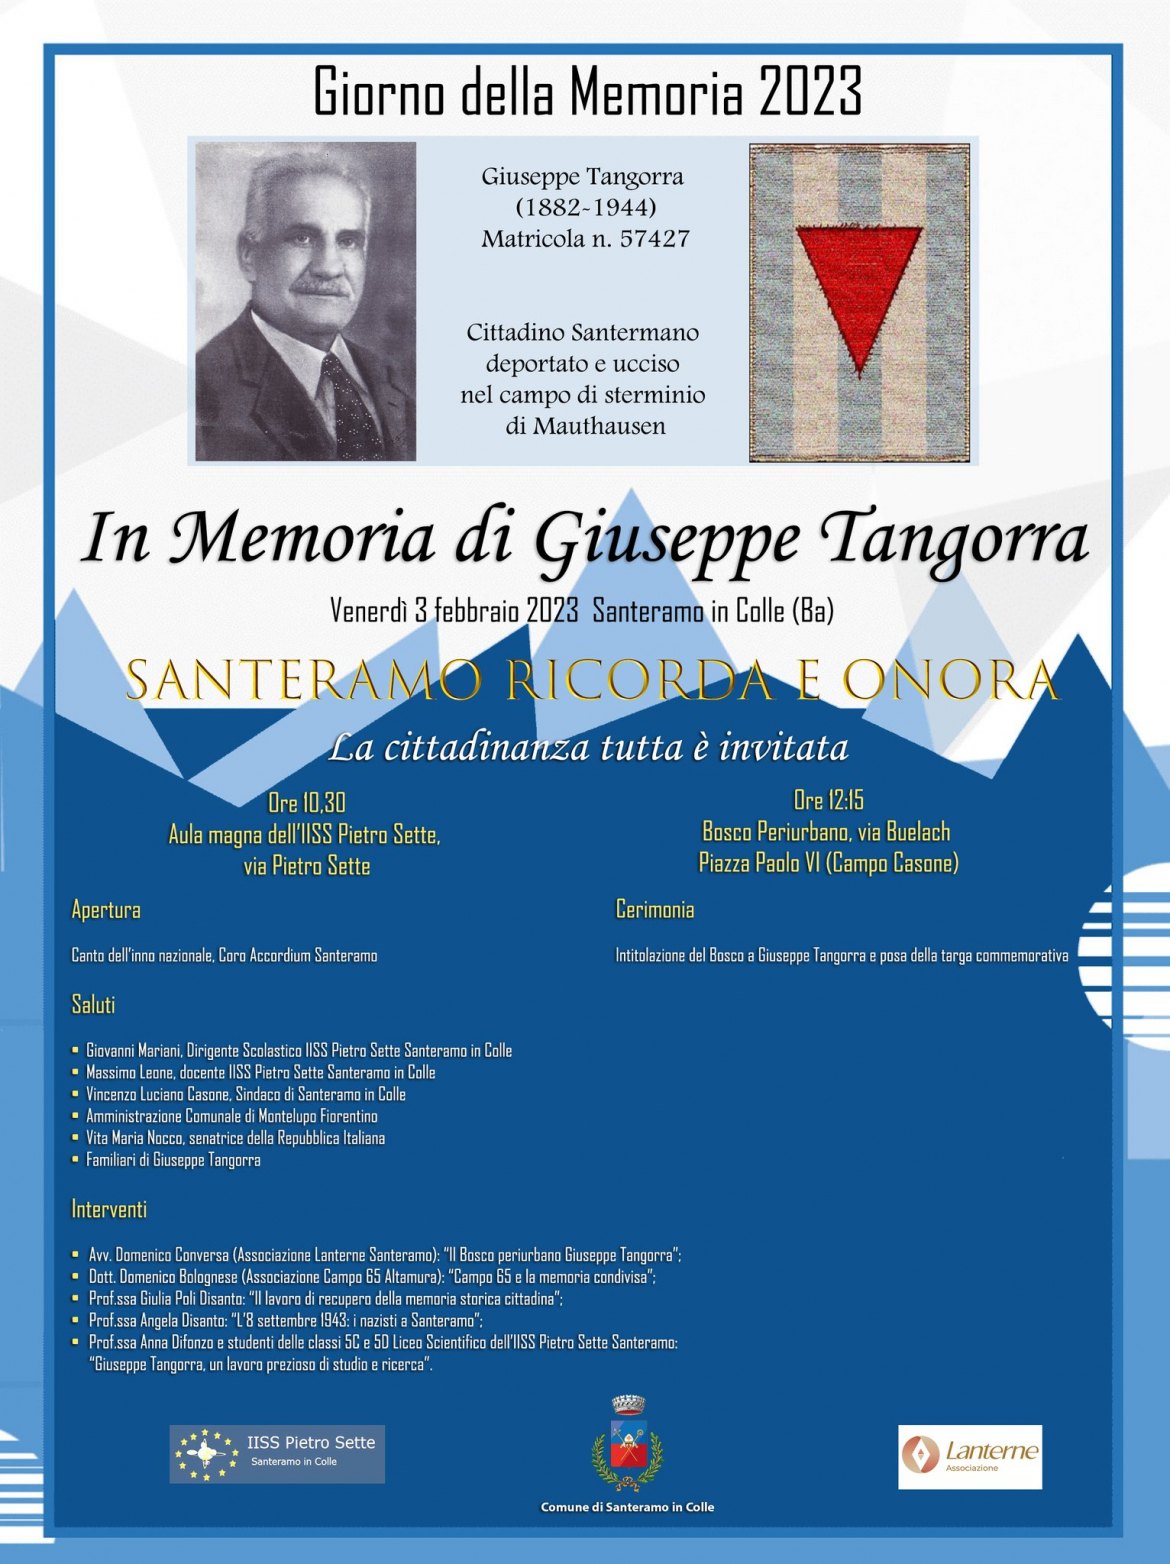 Intitolazione Bosco Periurbano di via Bulach e commemorazione di Giuseppe Tangorra